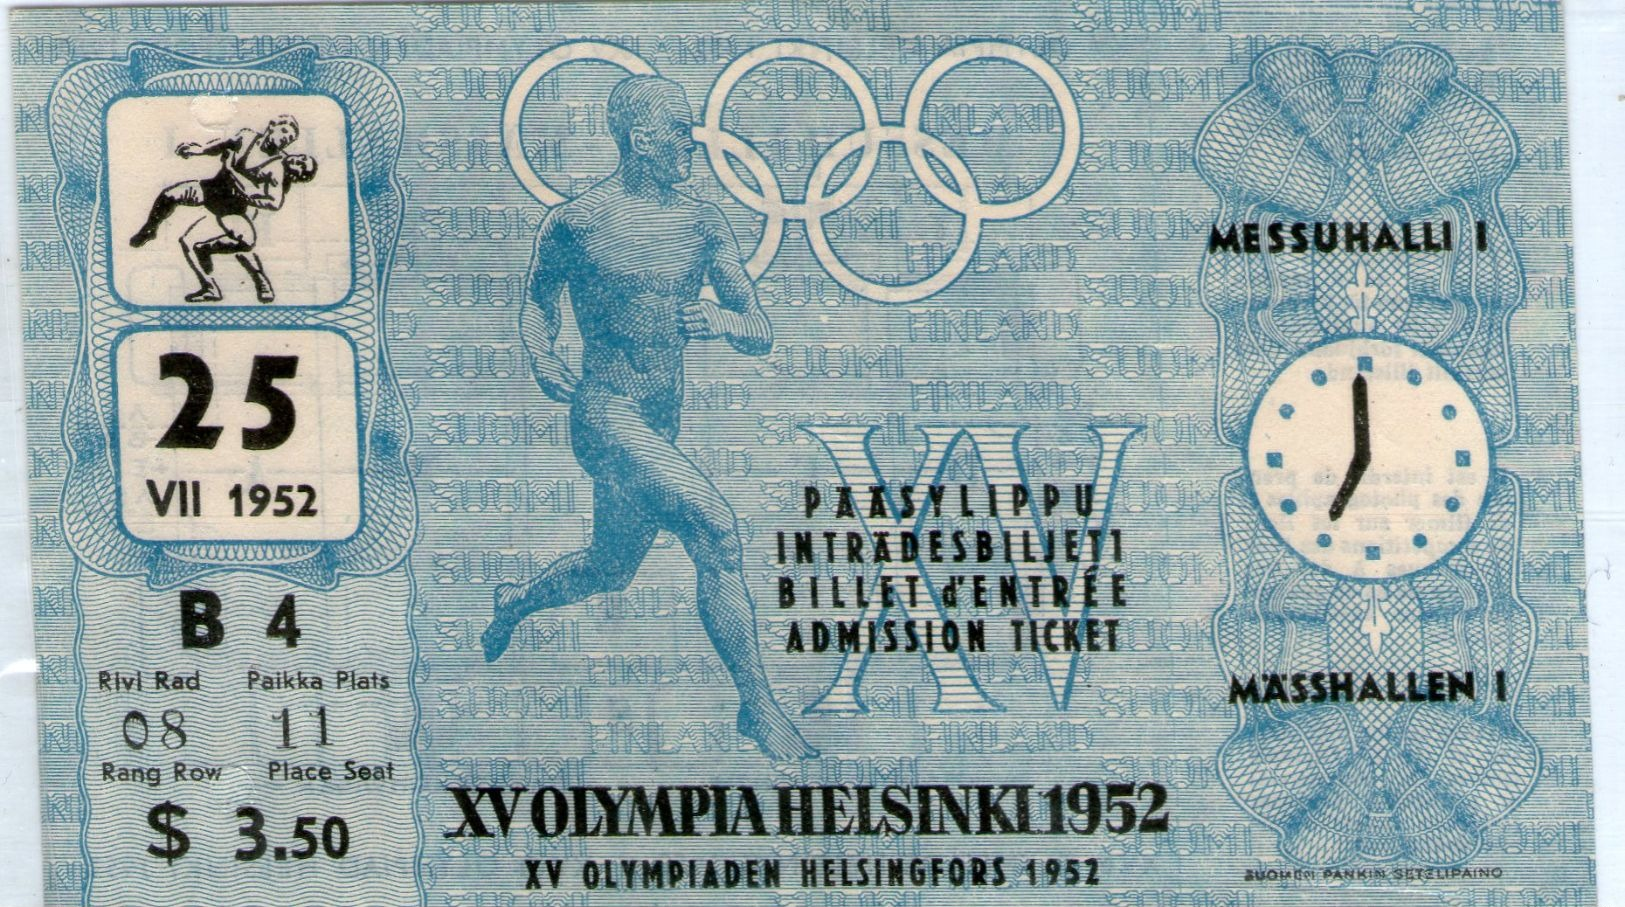 Helsinki 1952 Olympik Game For USA For Wresteling - Trading Cards